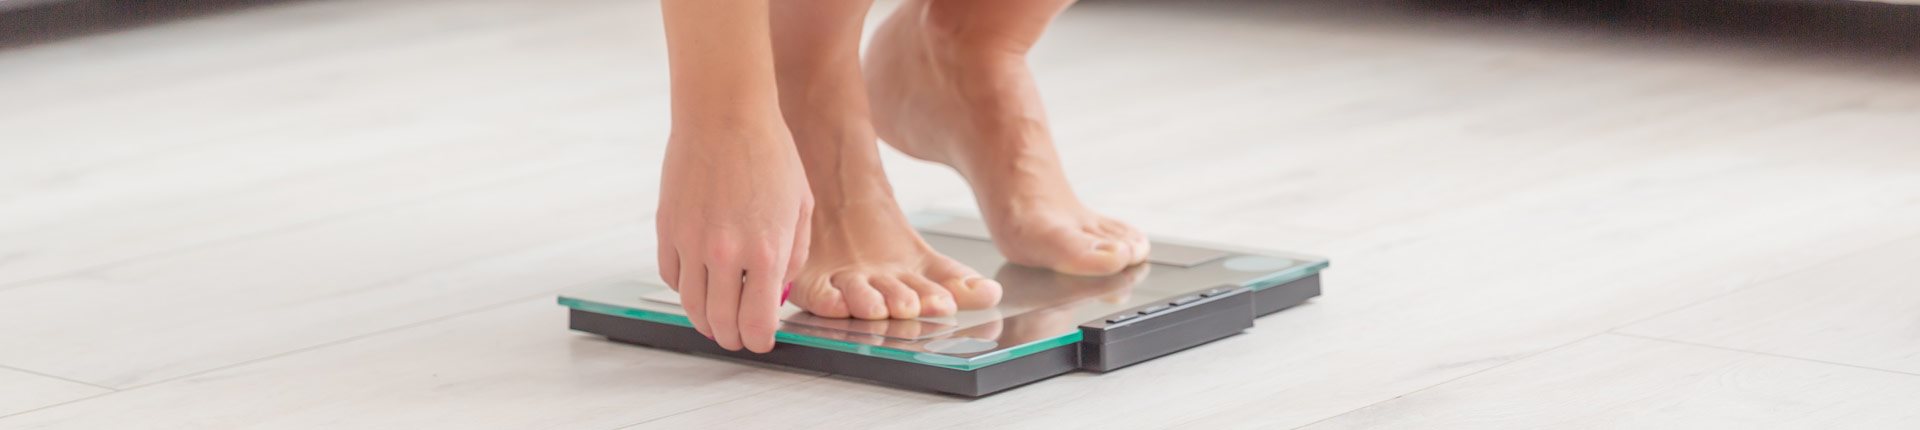 Jakie badania wykonać, gdy nie możesz schudnąć?